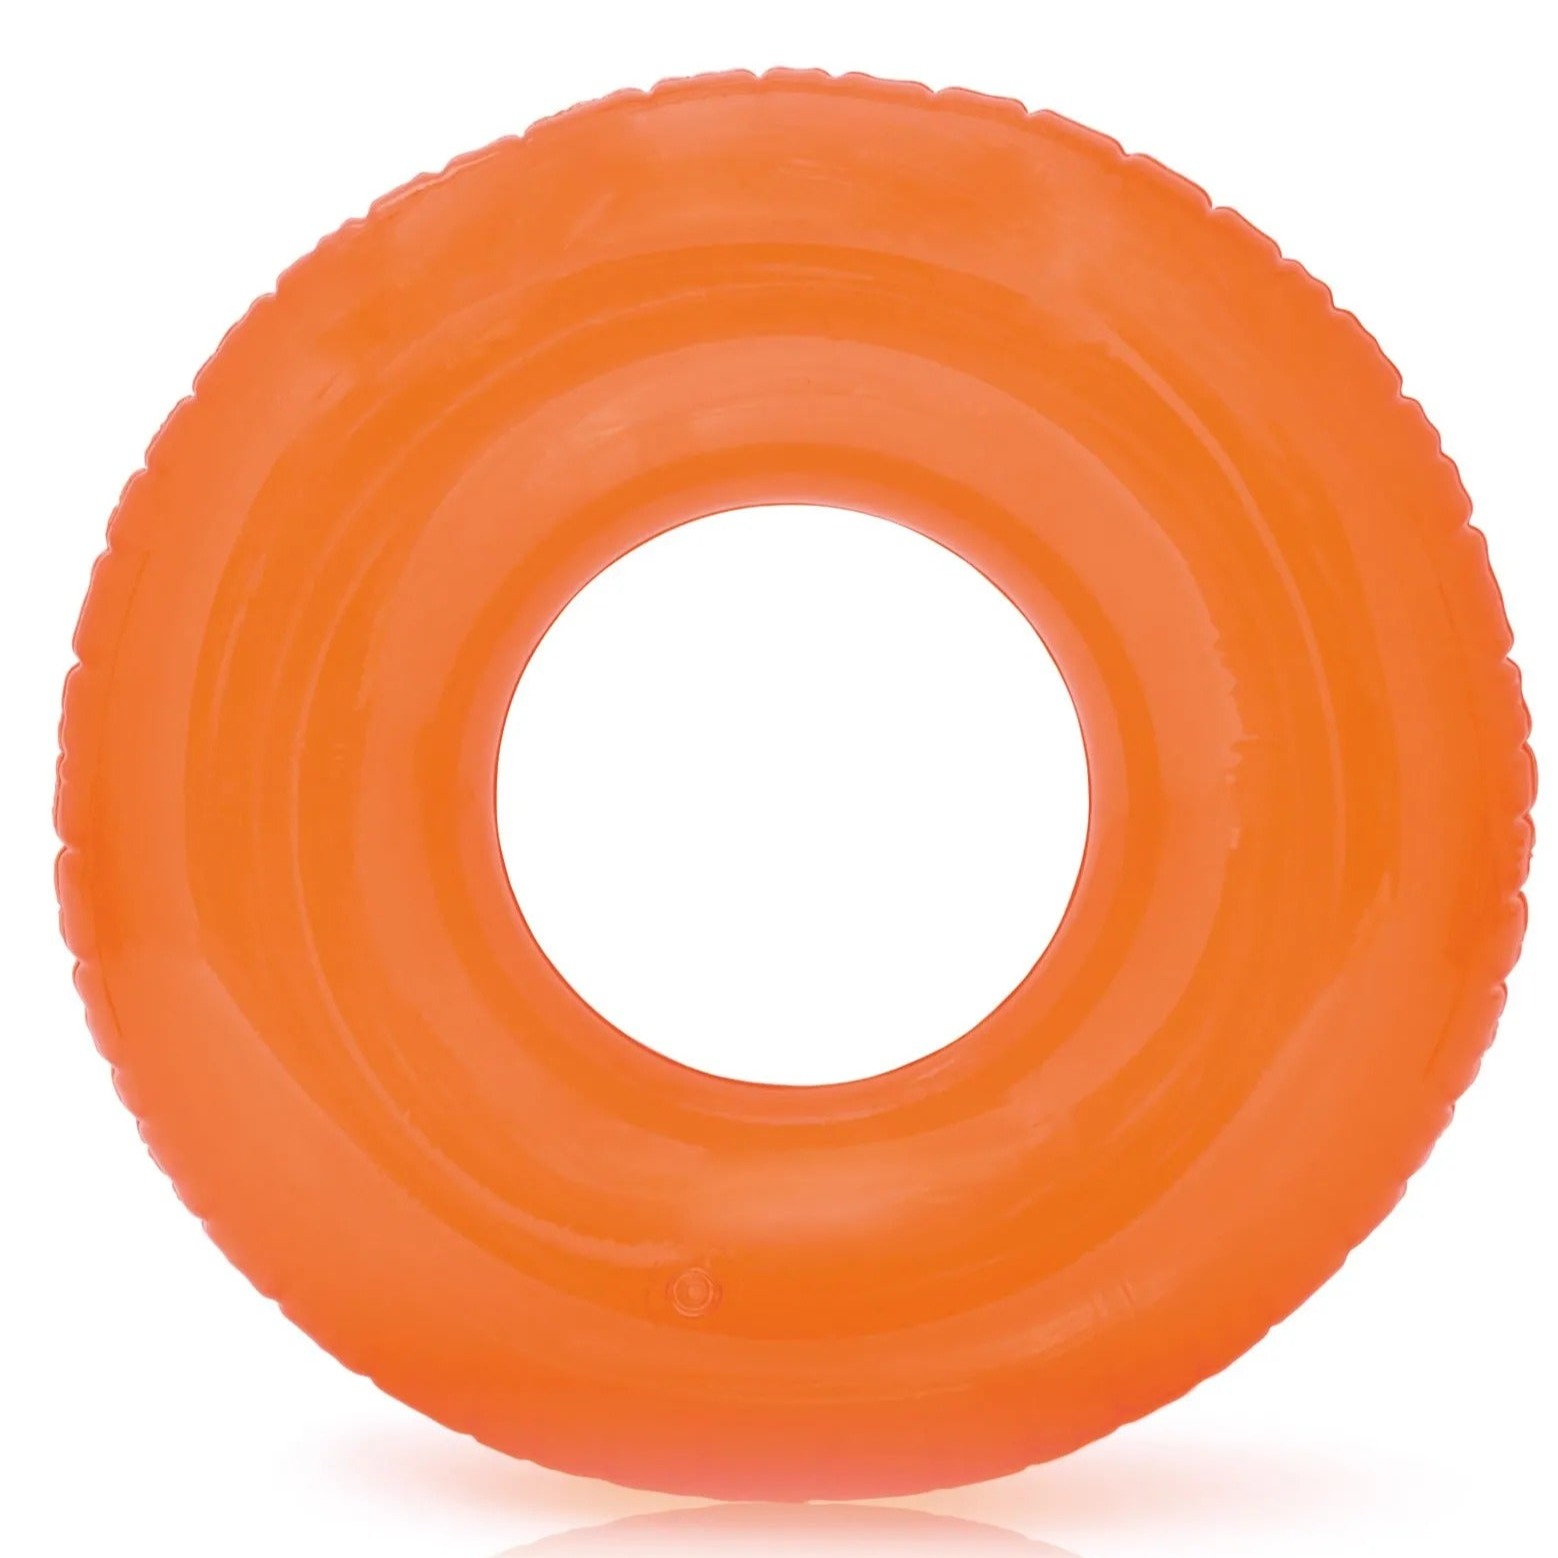 Intex - Transparent Orange Tube - 76 cm